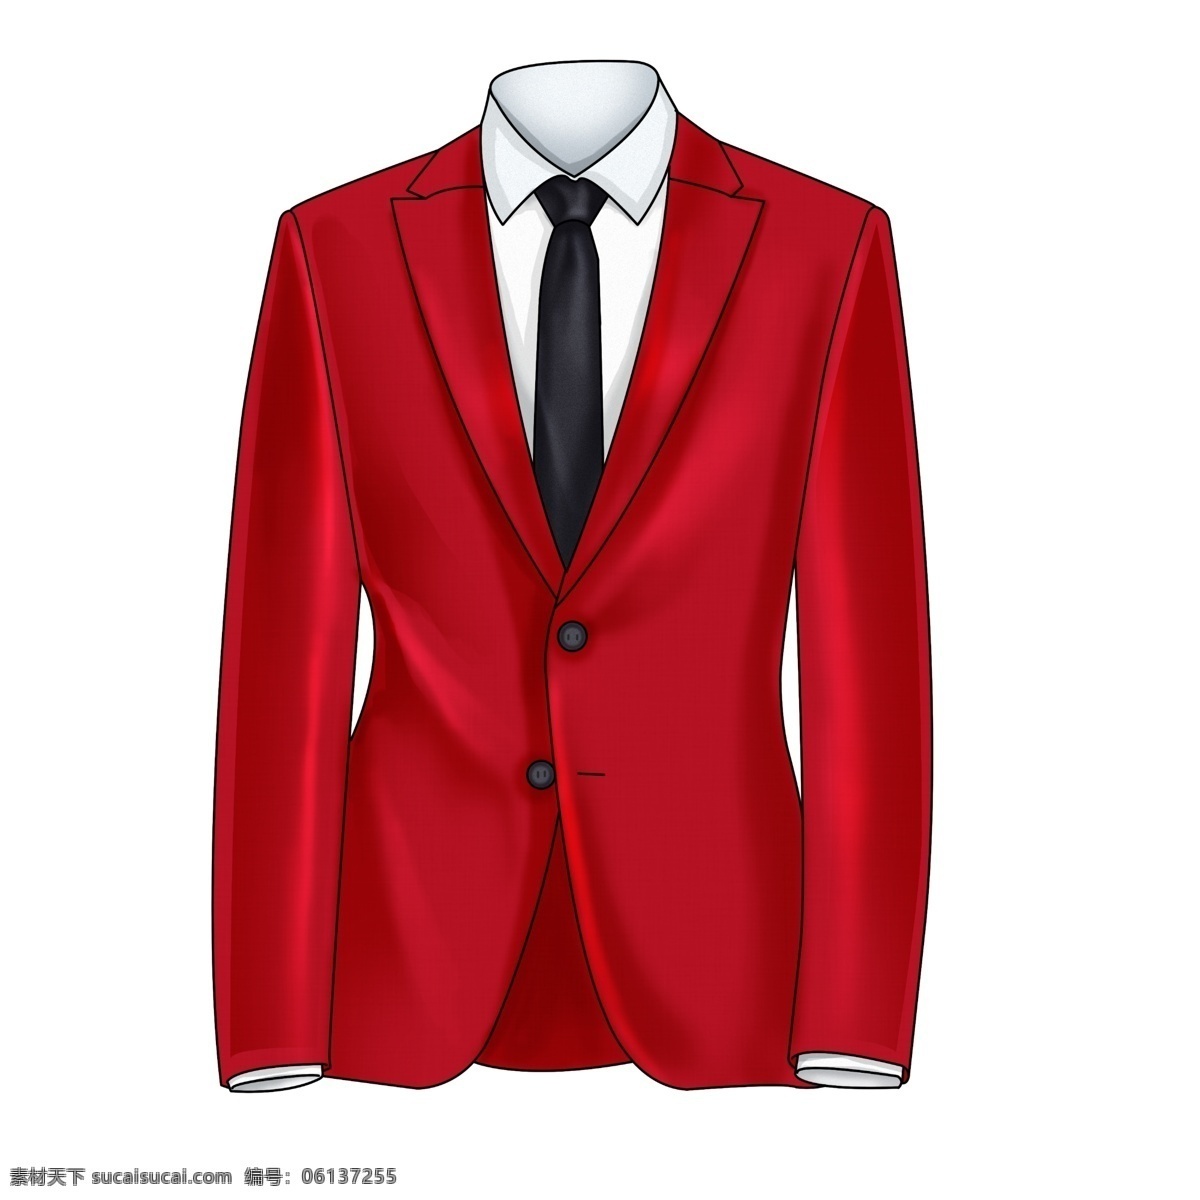 红色 手绘 西装 外套 西装外套 父亲节 生活用品 衣服插画 红色西装外套 上衣 插画 男士 礼品 礼物 衬衣 西服 领带